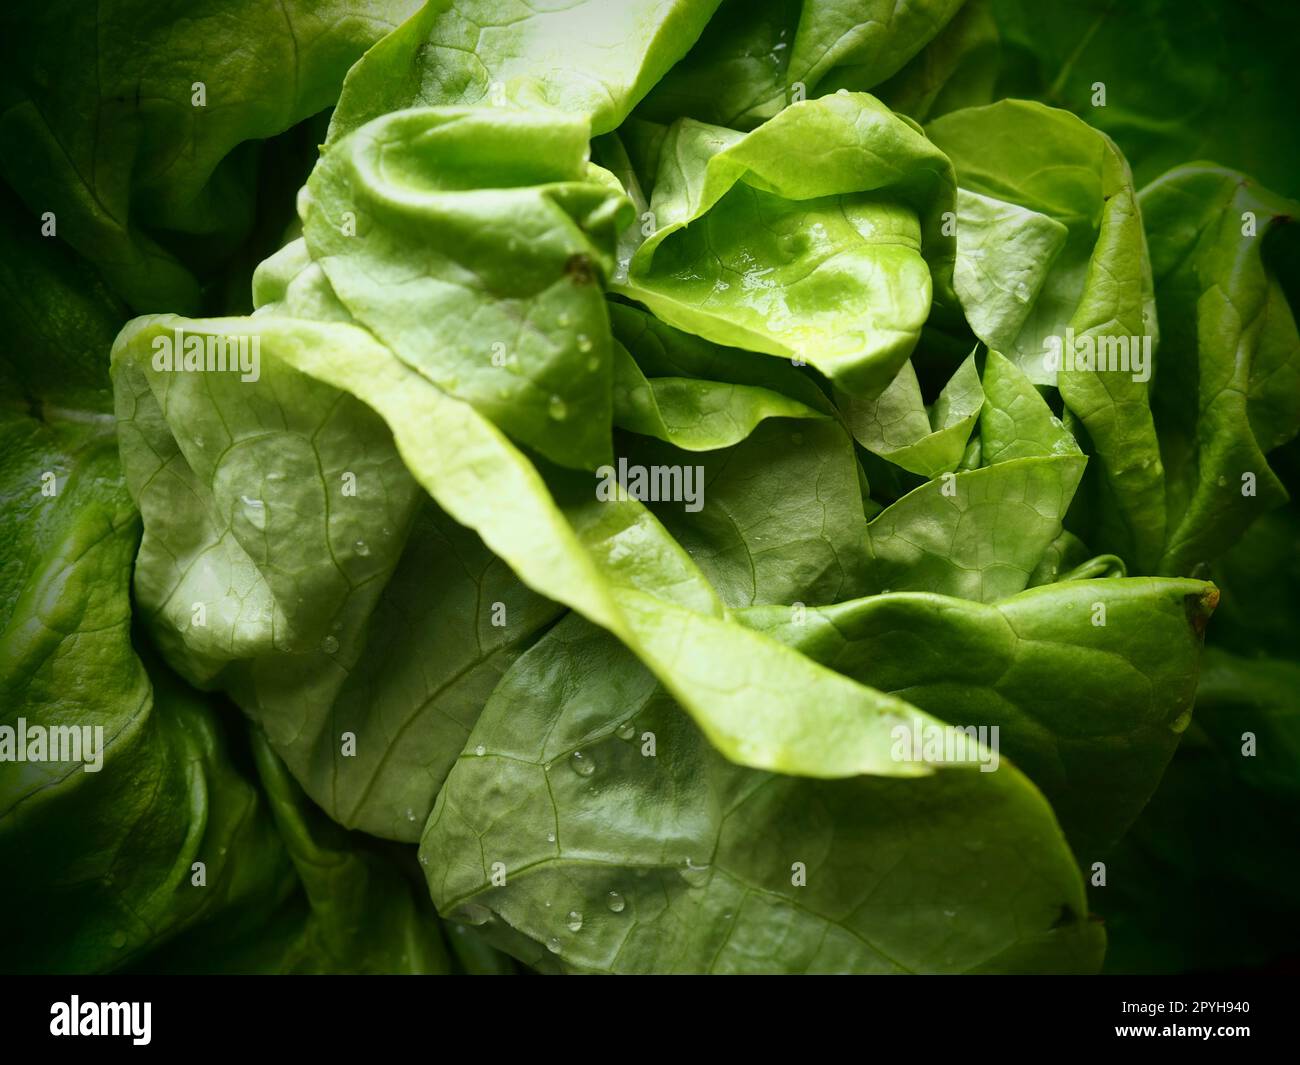 Salat. Ein Jahreskraut der Gattung Salat der Familie Asteraceae. Köstliche, verstärkte Blätter. Grüner Salat oder Beilage. Frische Kräuter für gesunde Ernährung Stockfoto